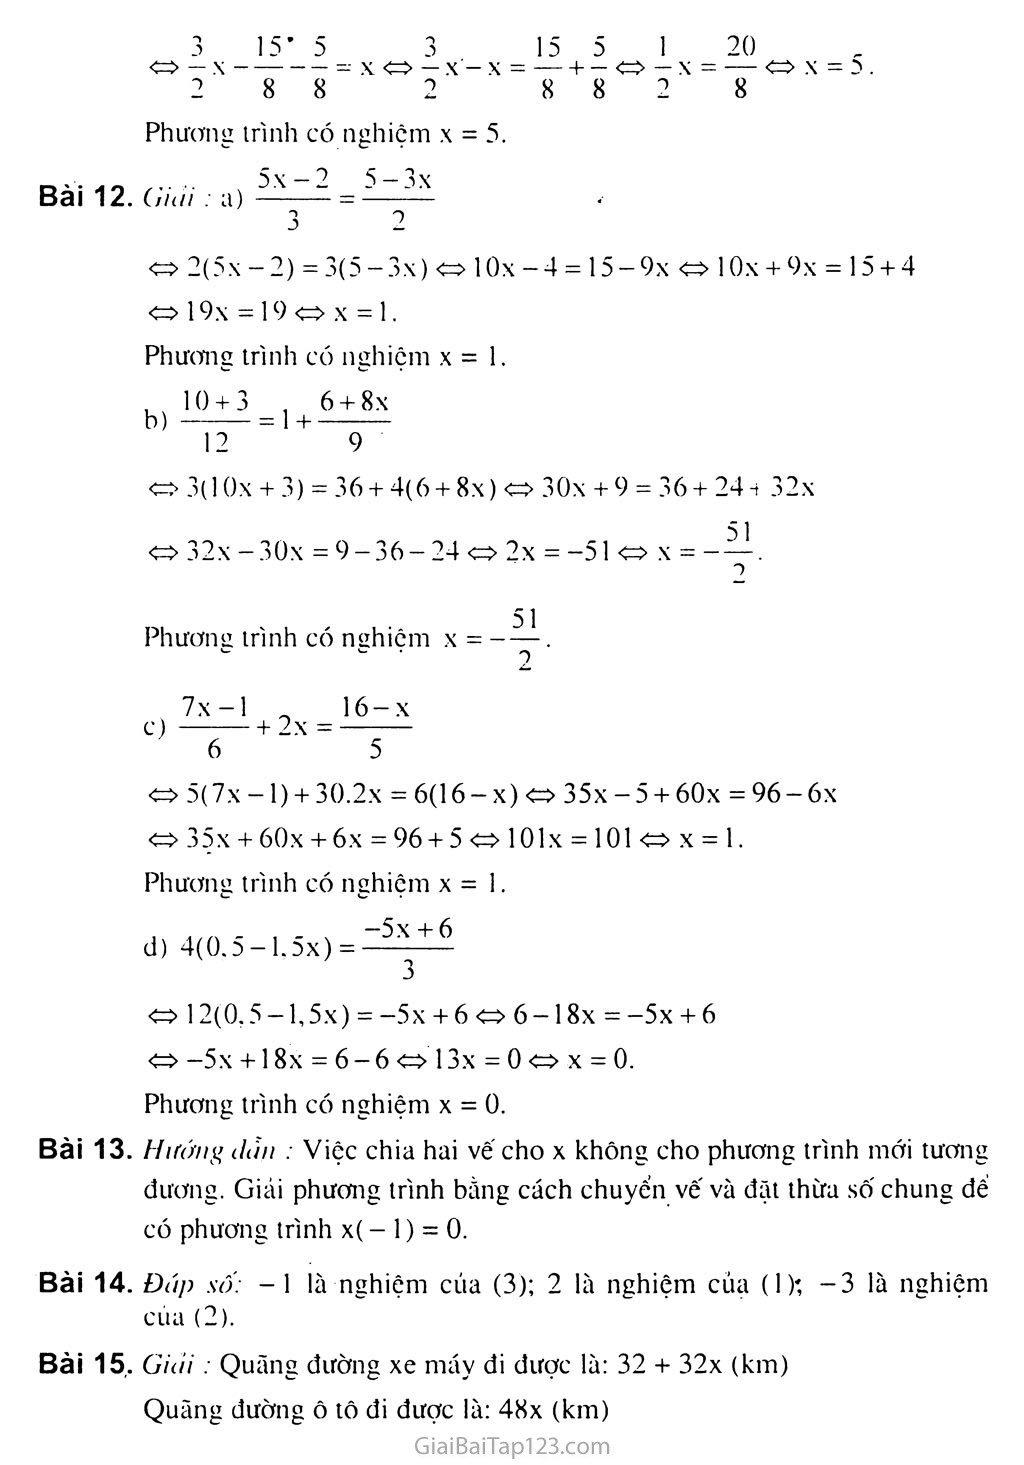 Bài 3. Phương trình đưa được về dạng ax + b = 0 trang 4